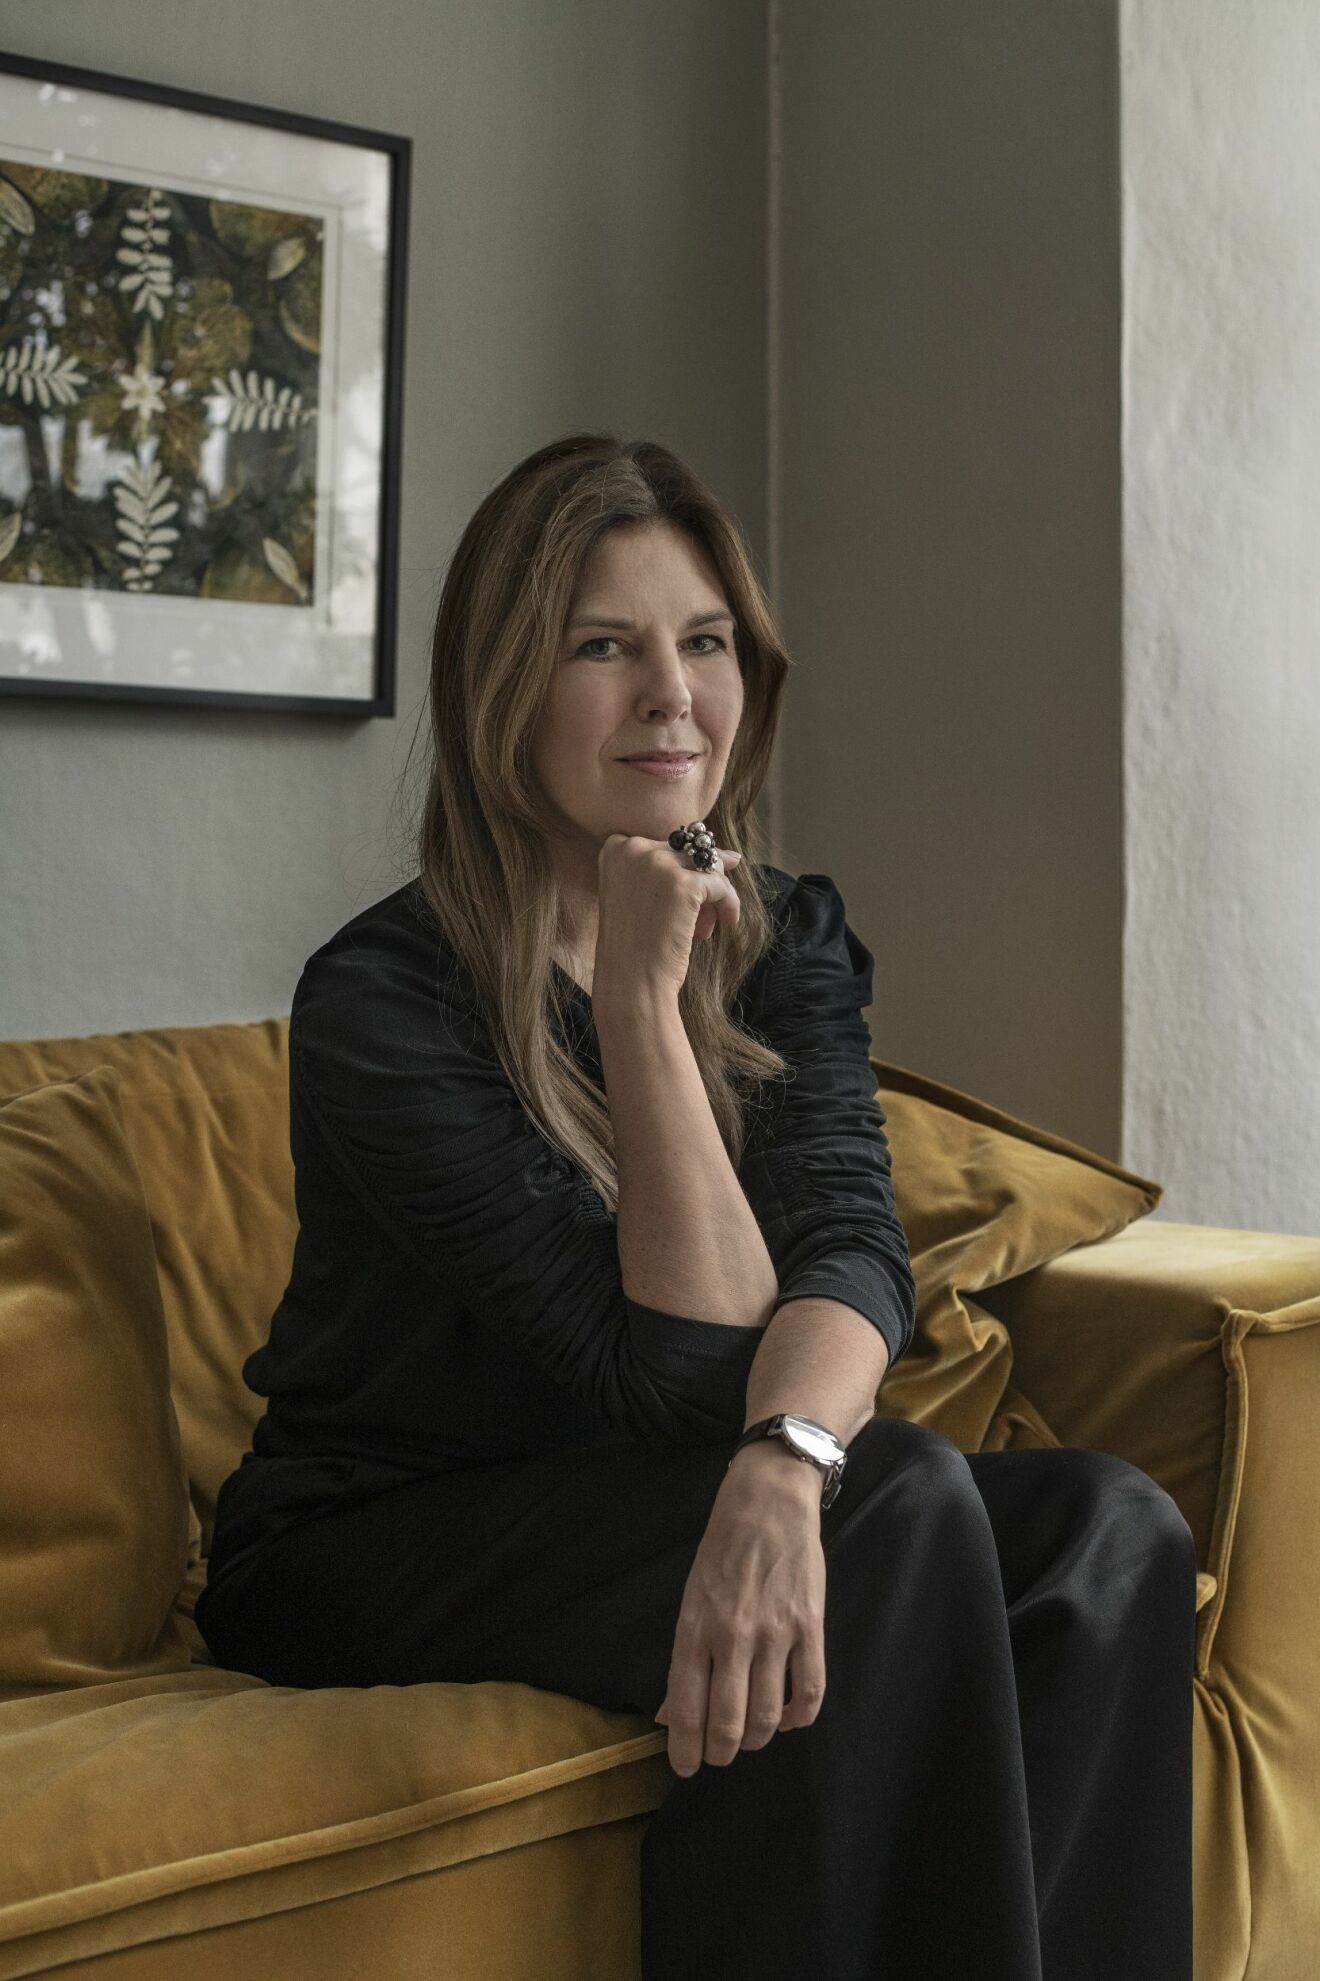 Karin Sköldberg i svart dress på den gula soffan i vardagsrummet.